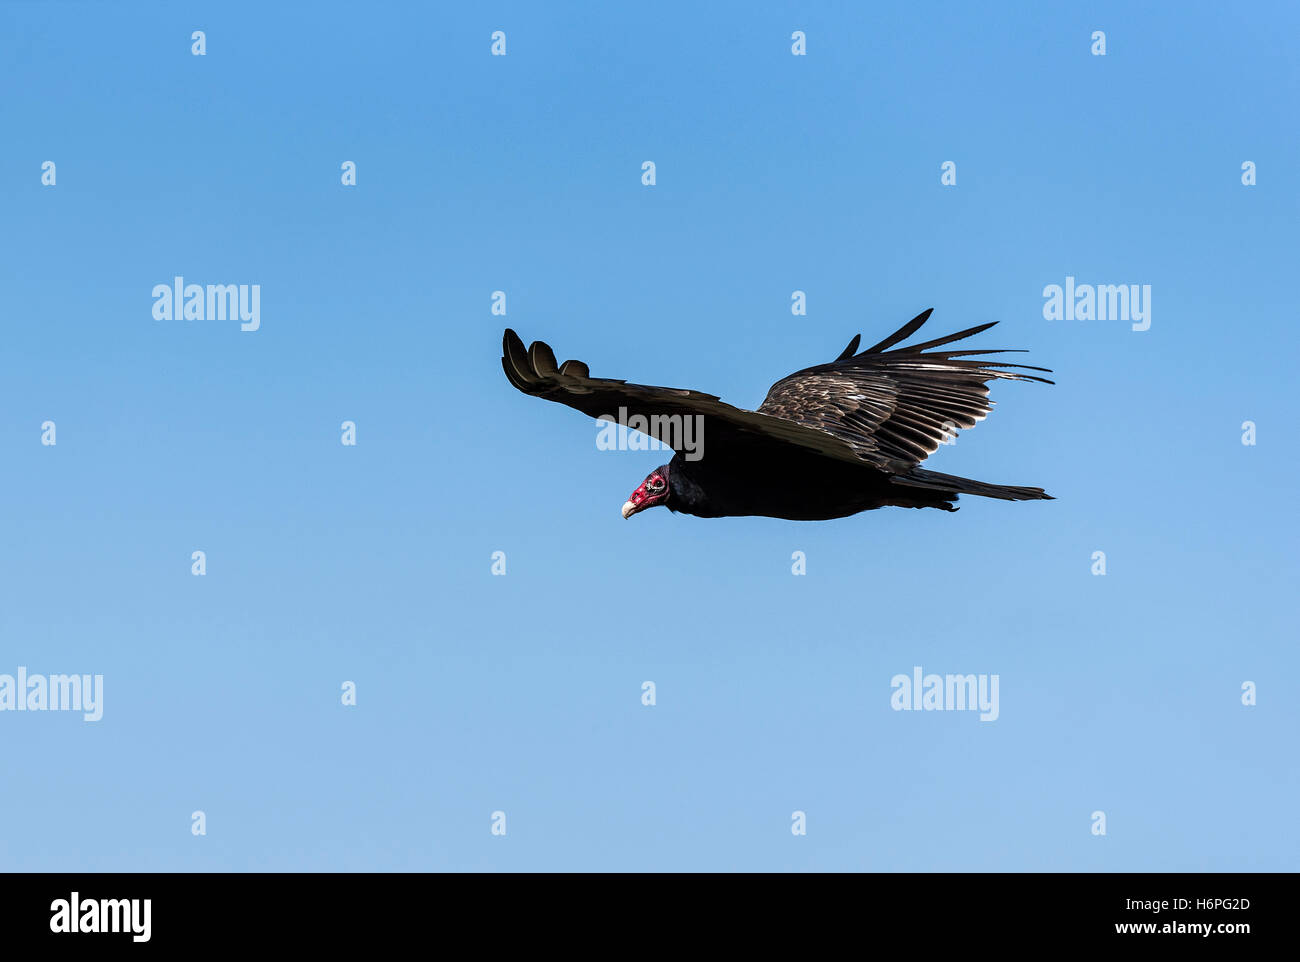 Turkey vulture in flight, Ohio, USA. Stock Photo